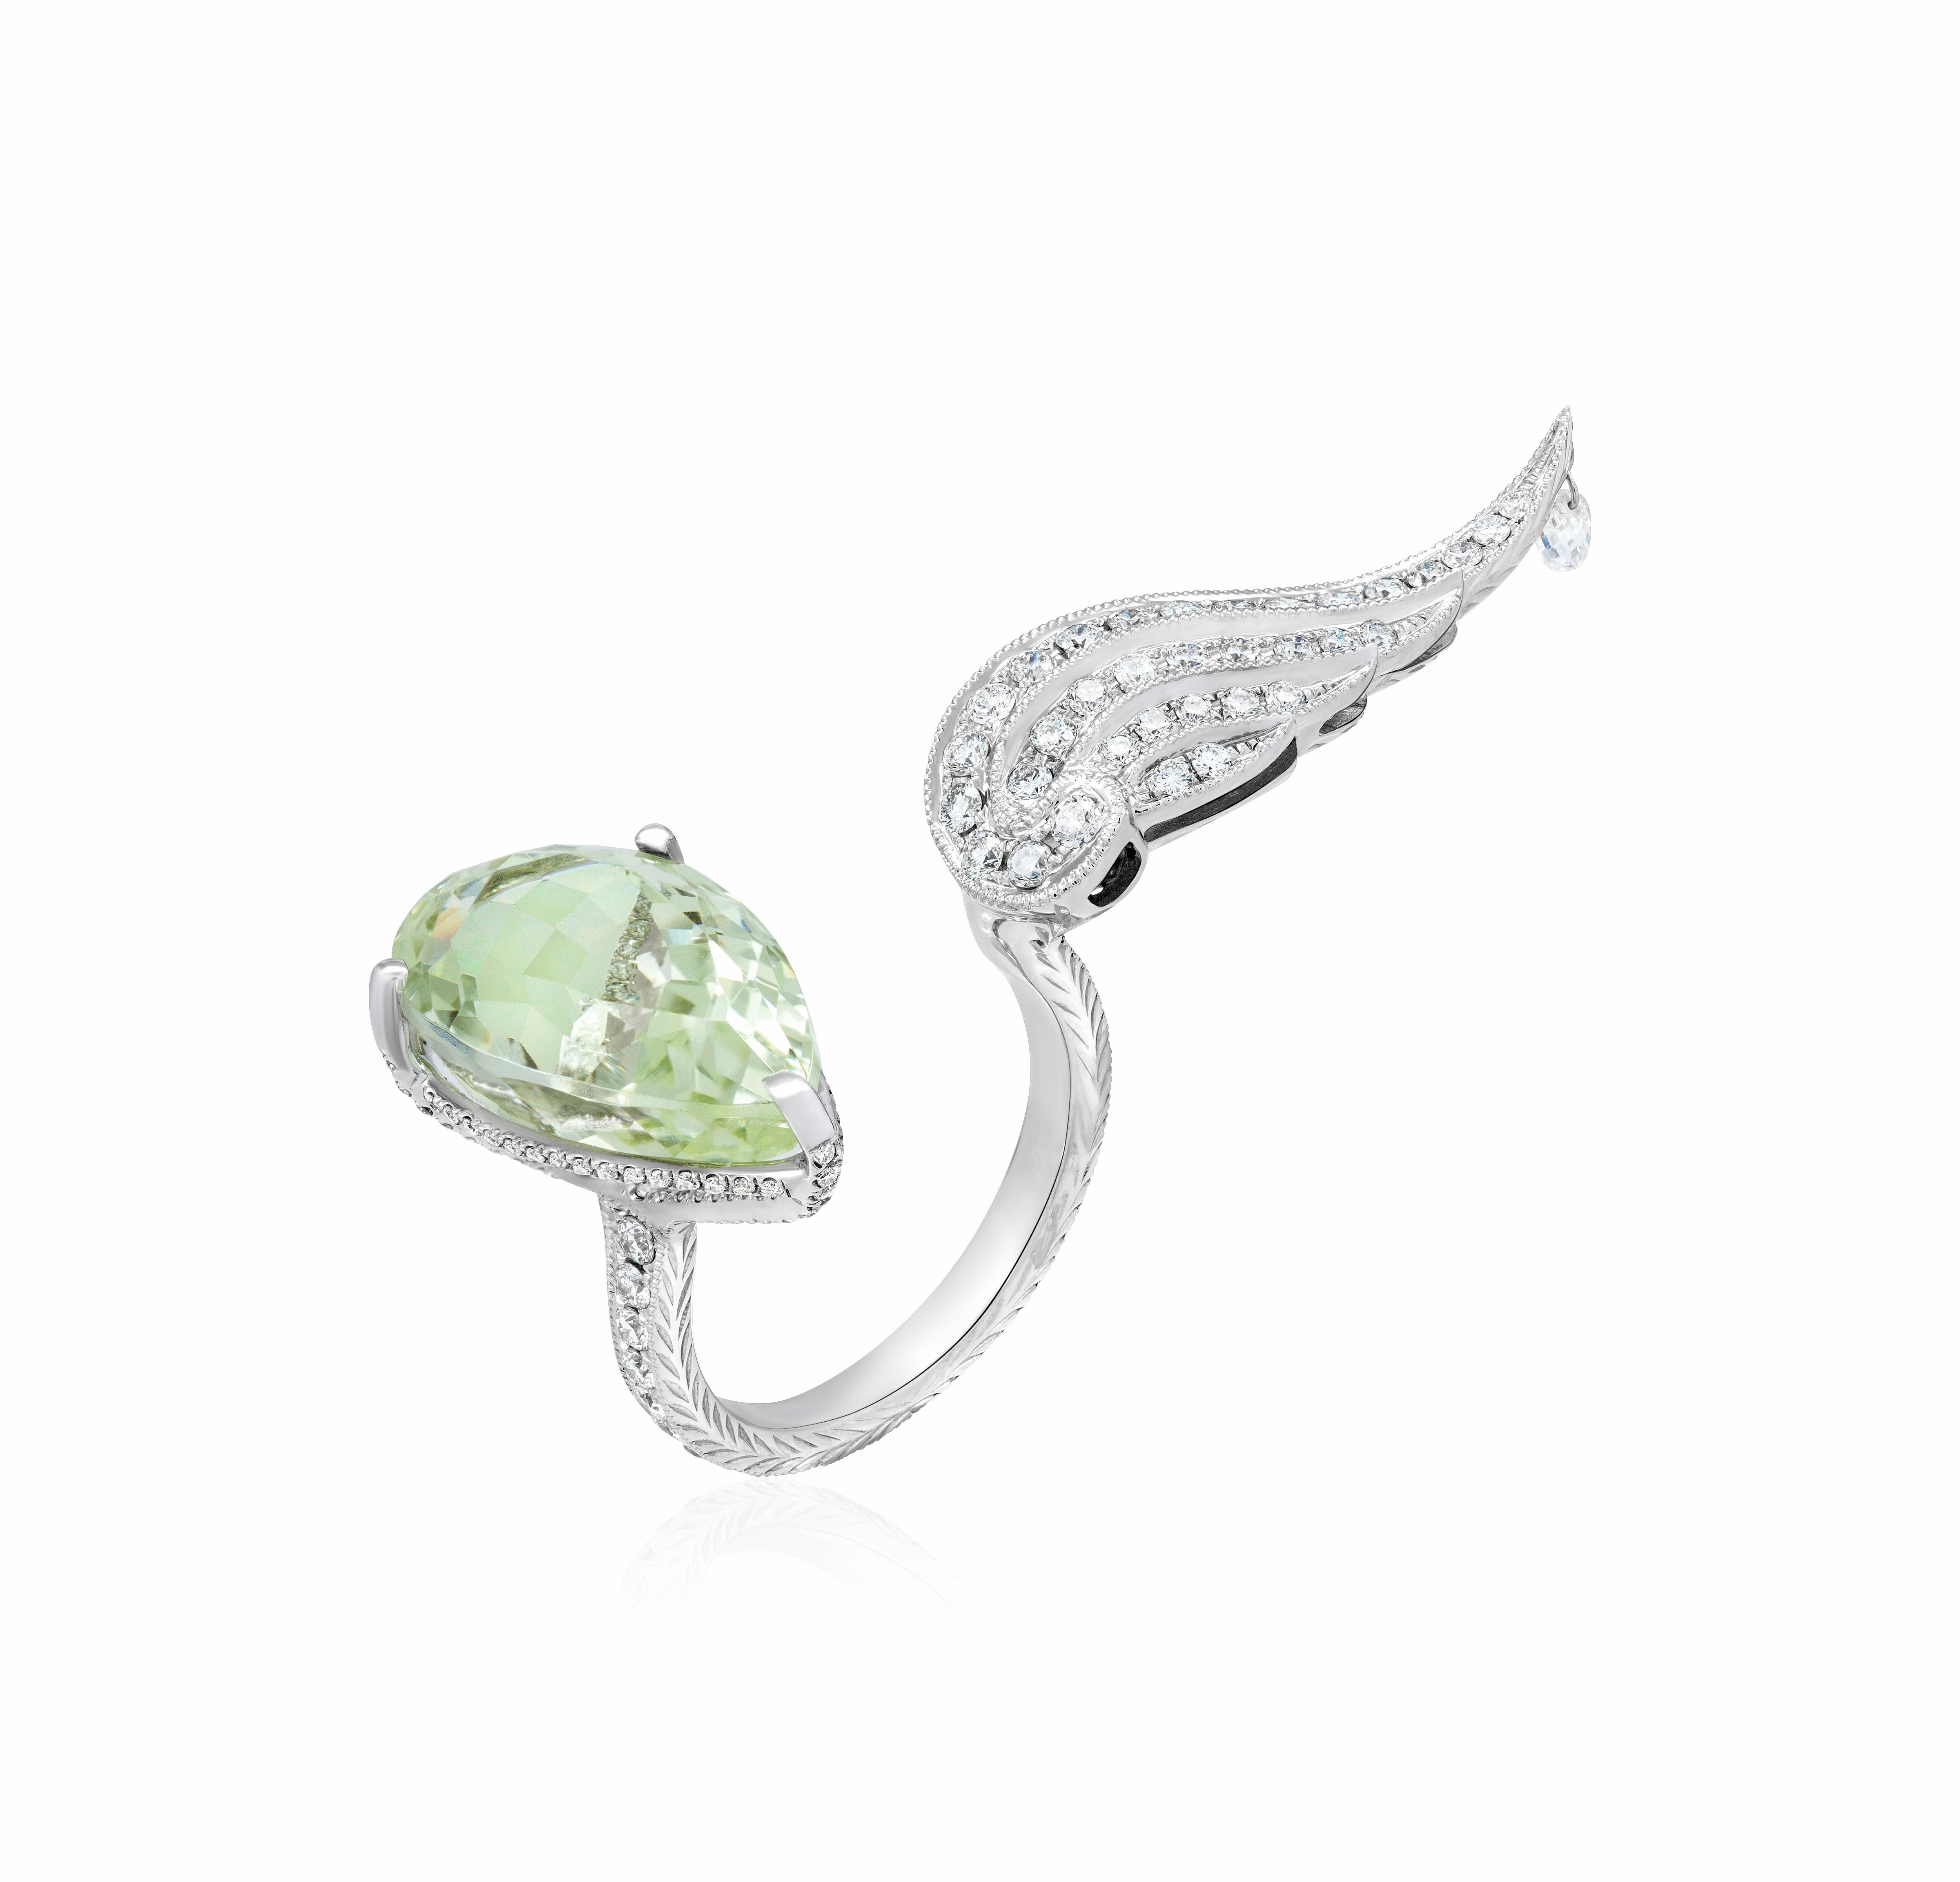 Разомкнутое кольцо Крыло с бериллом, бриллиантами из белого золота 750 пробы, фото № 1